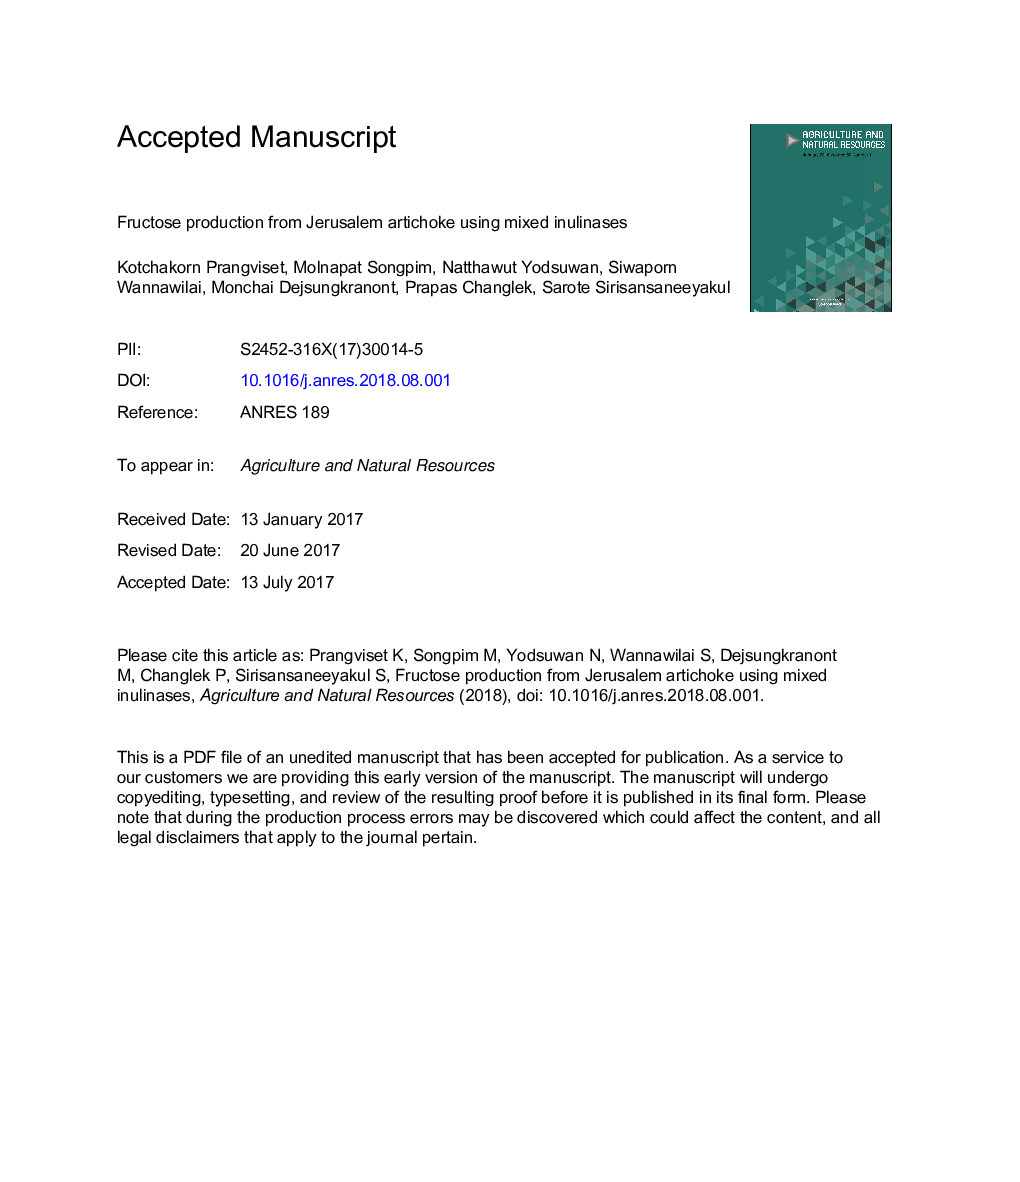 تولید فروکتوز از آرتیشوک اورشلیم با استفاده از مخلوط اینولیناز